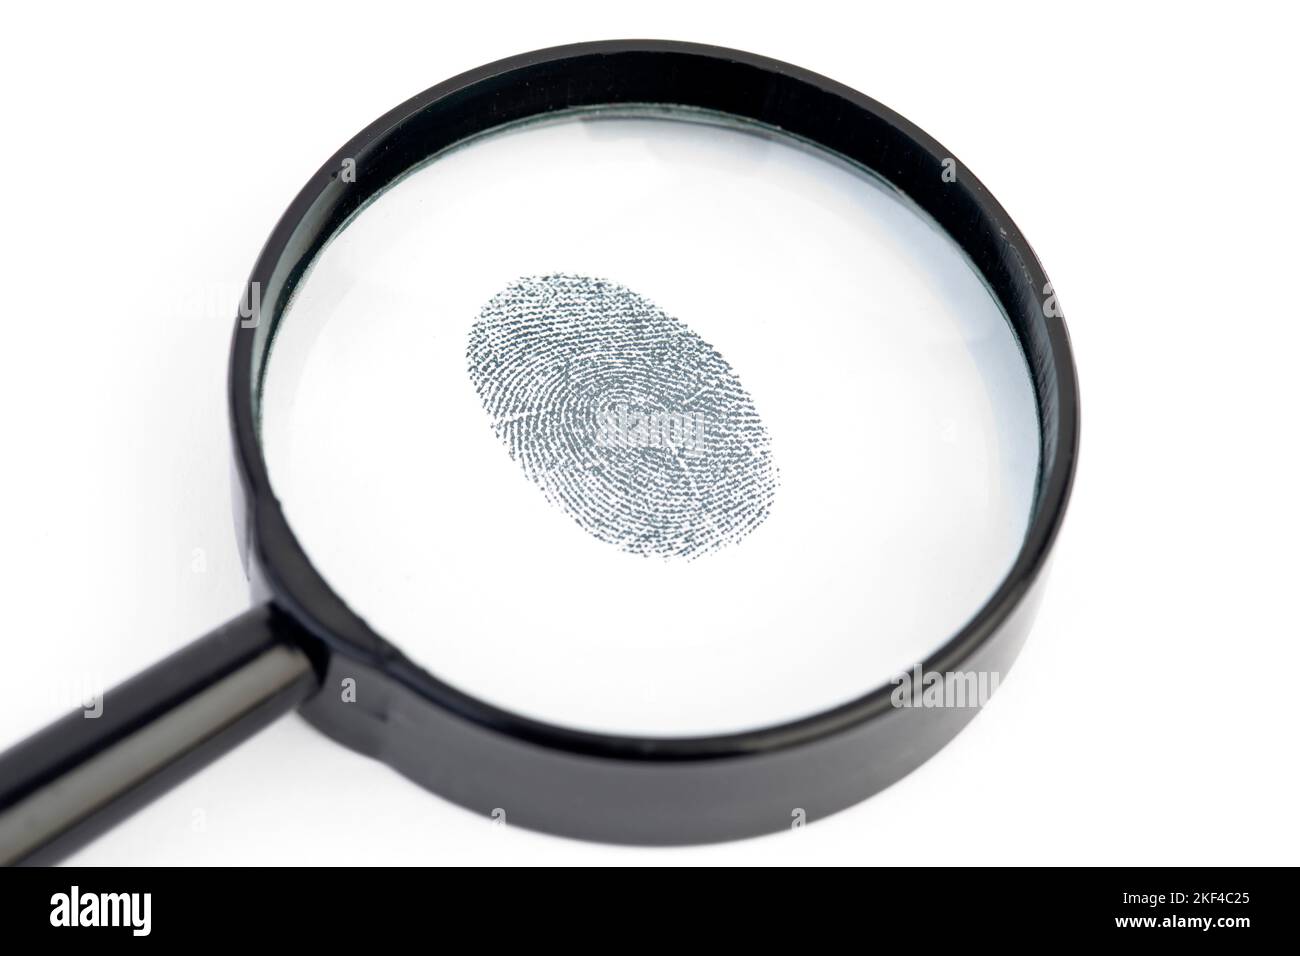 Ein Fingerabdruck wird durch die Lupe betrachtet, Tatverdächtiger, Krimineller, Verbrecher, Täterspuren, DNA, Stock Photo